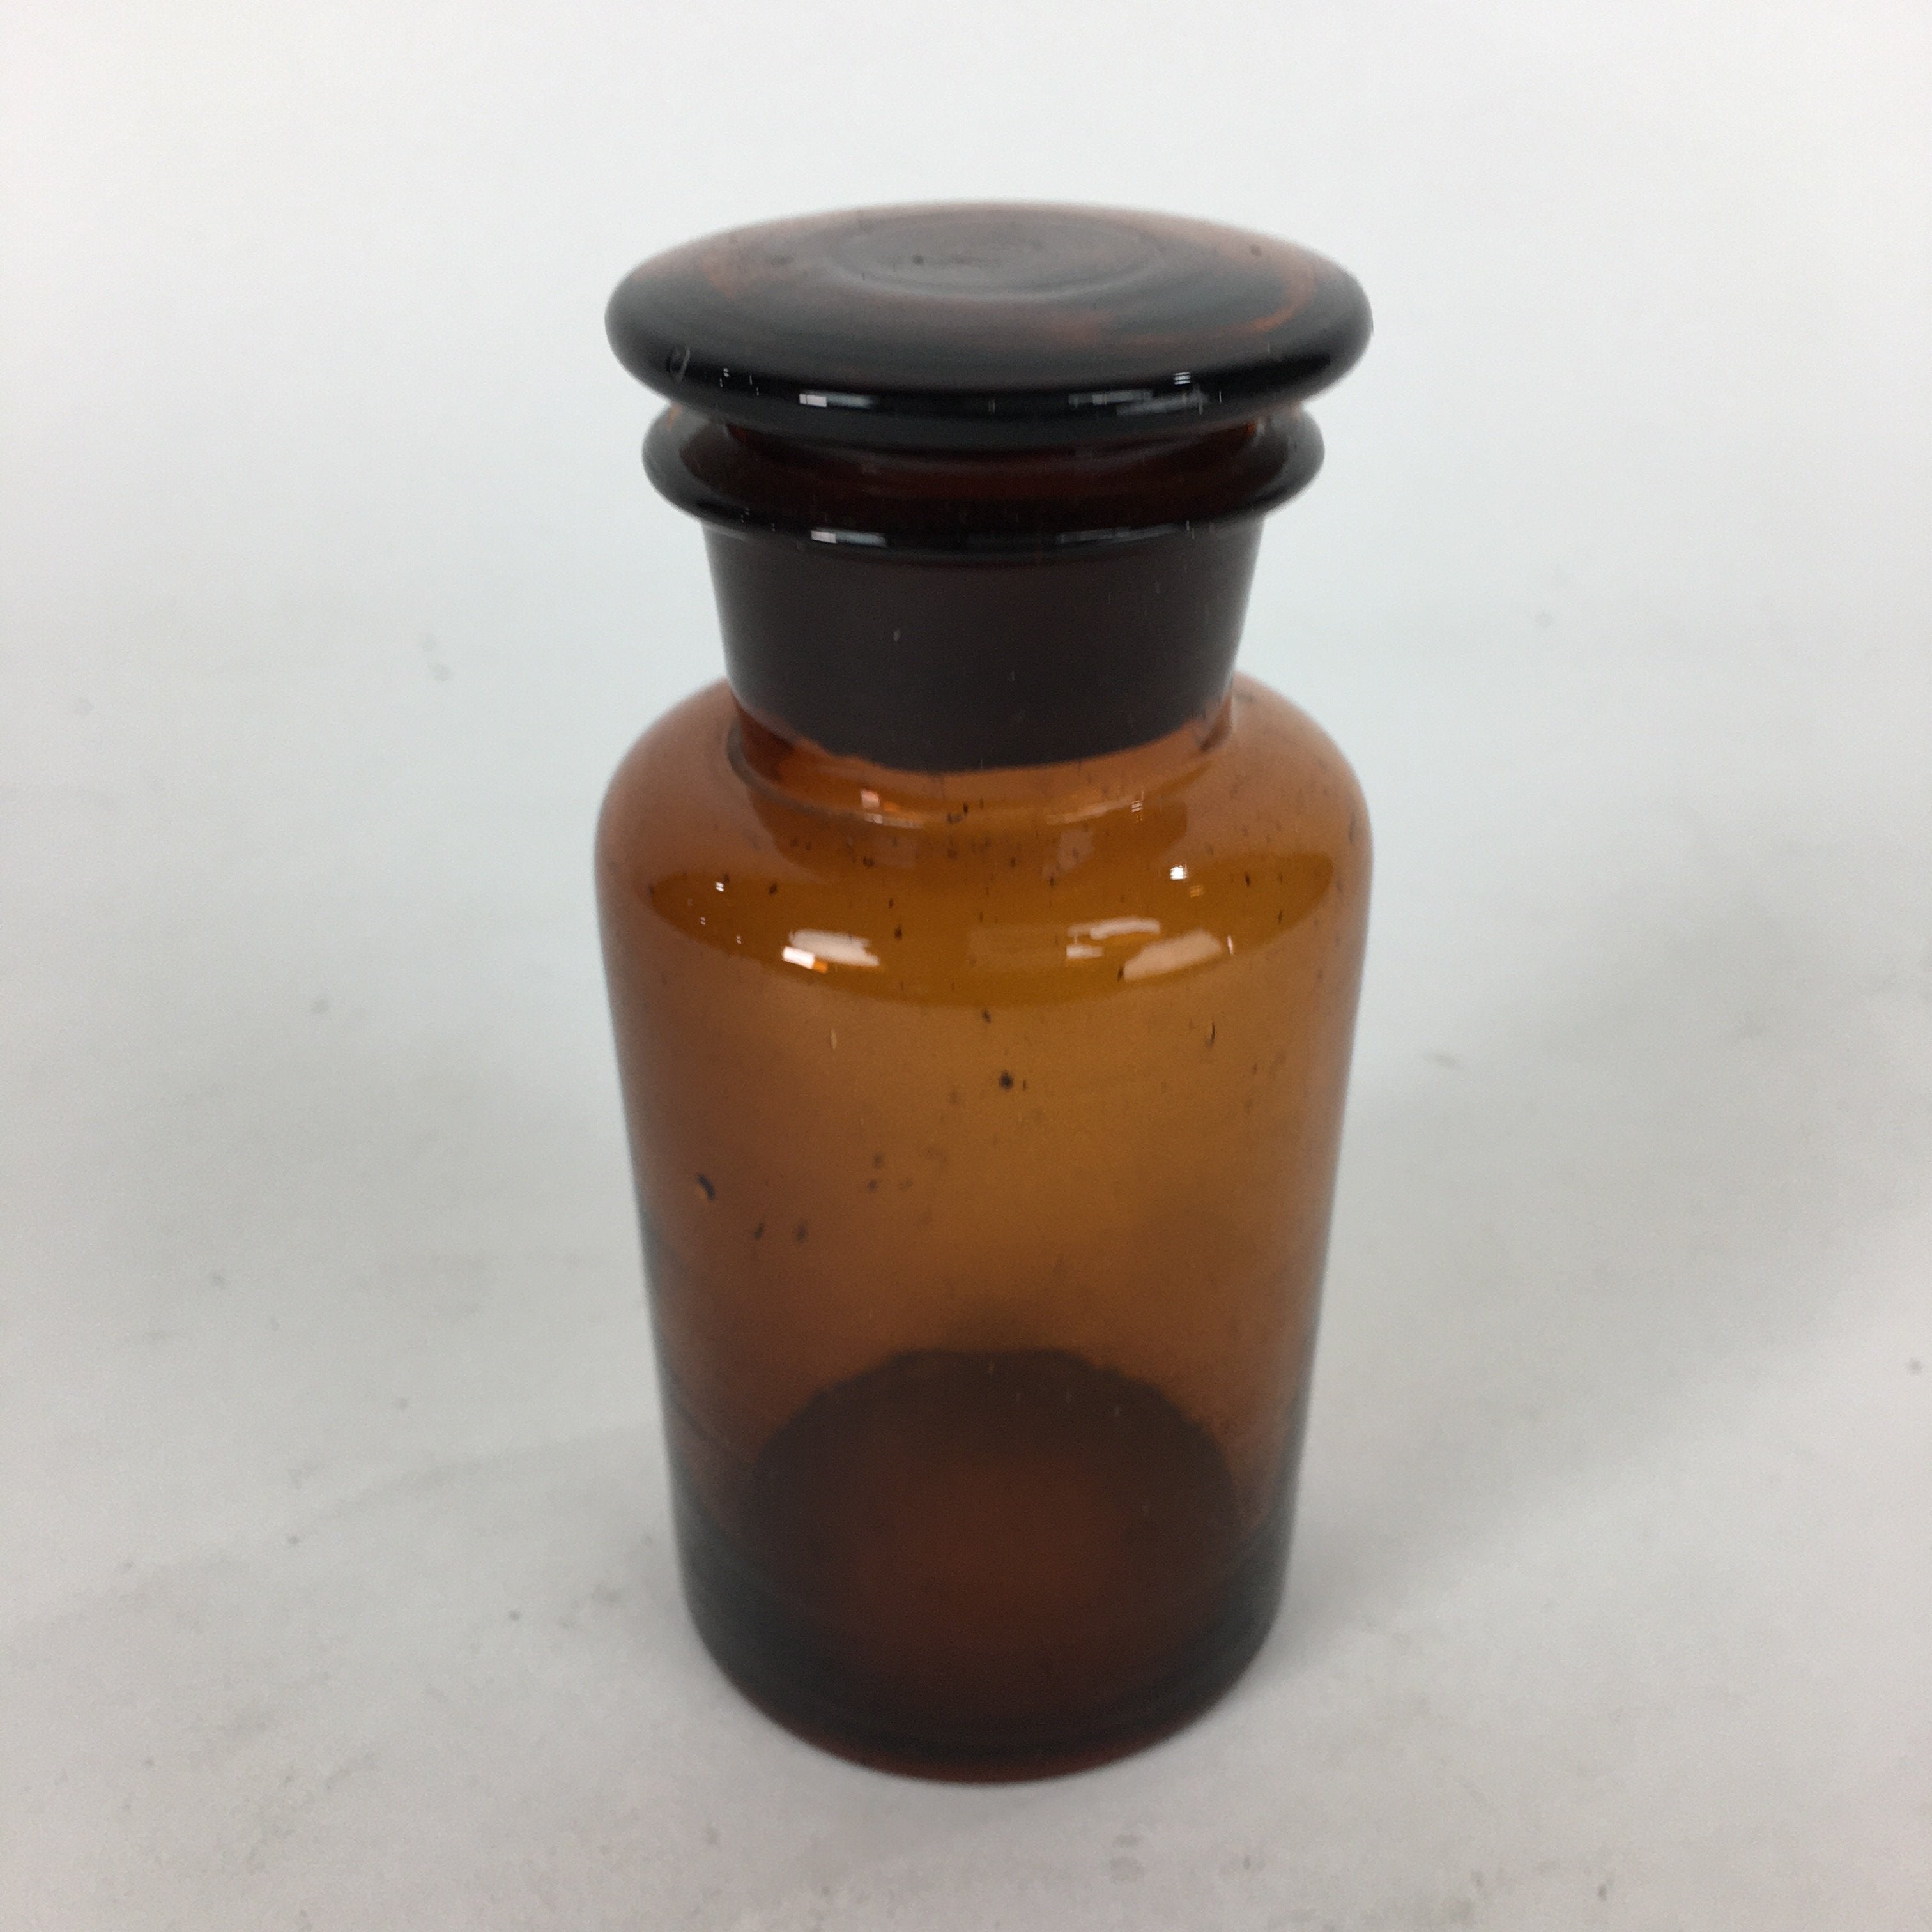 Japanese Lidded Glass Medicine Bottle Vtg Amber Color Glass 11 cm Vase MB9